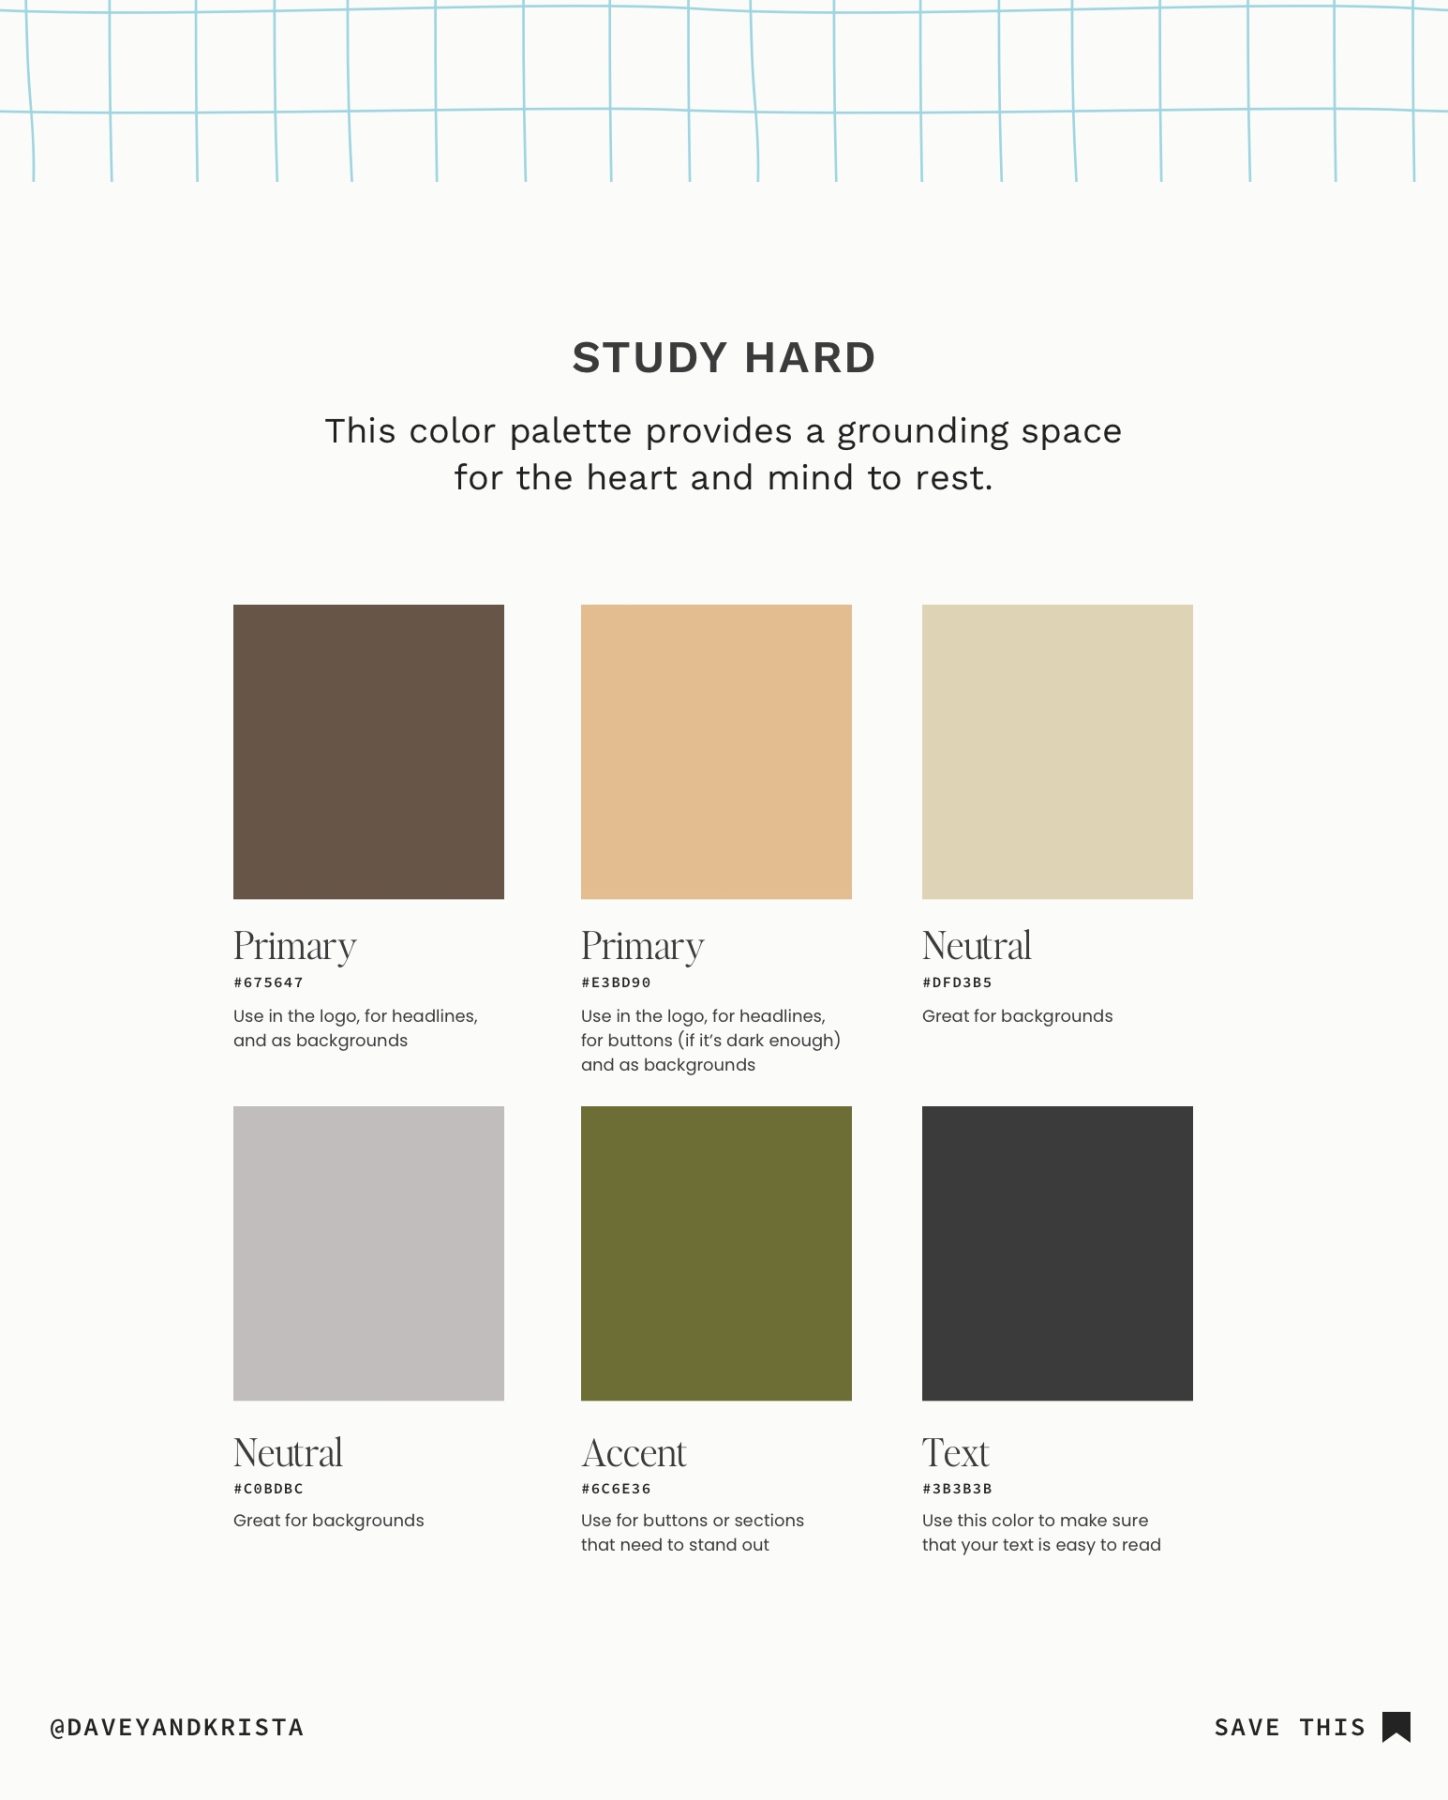 Study Hard Color Palette for websites and brands.